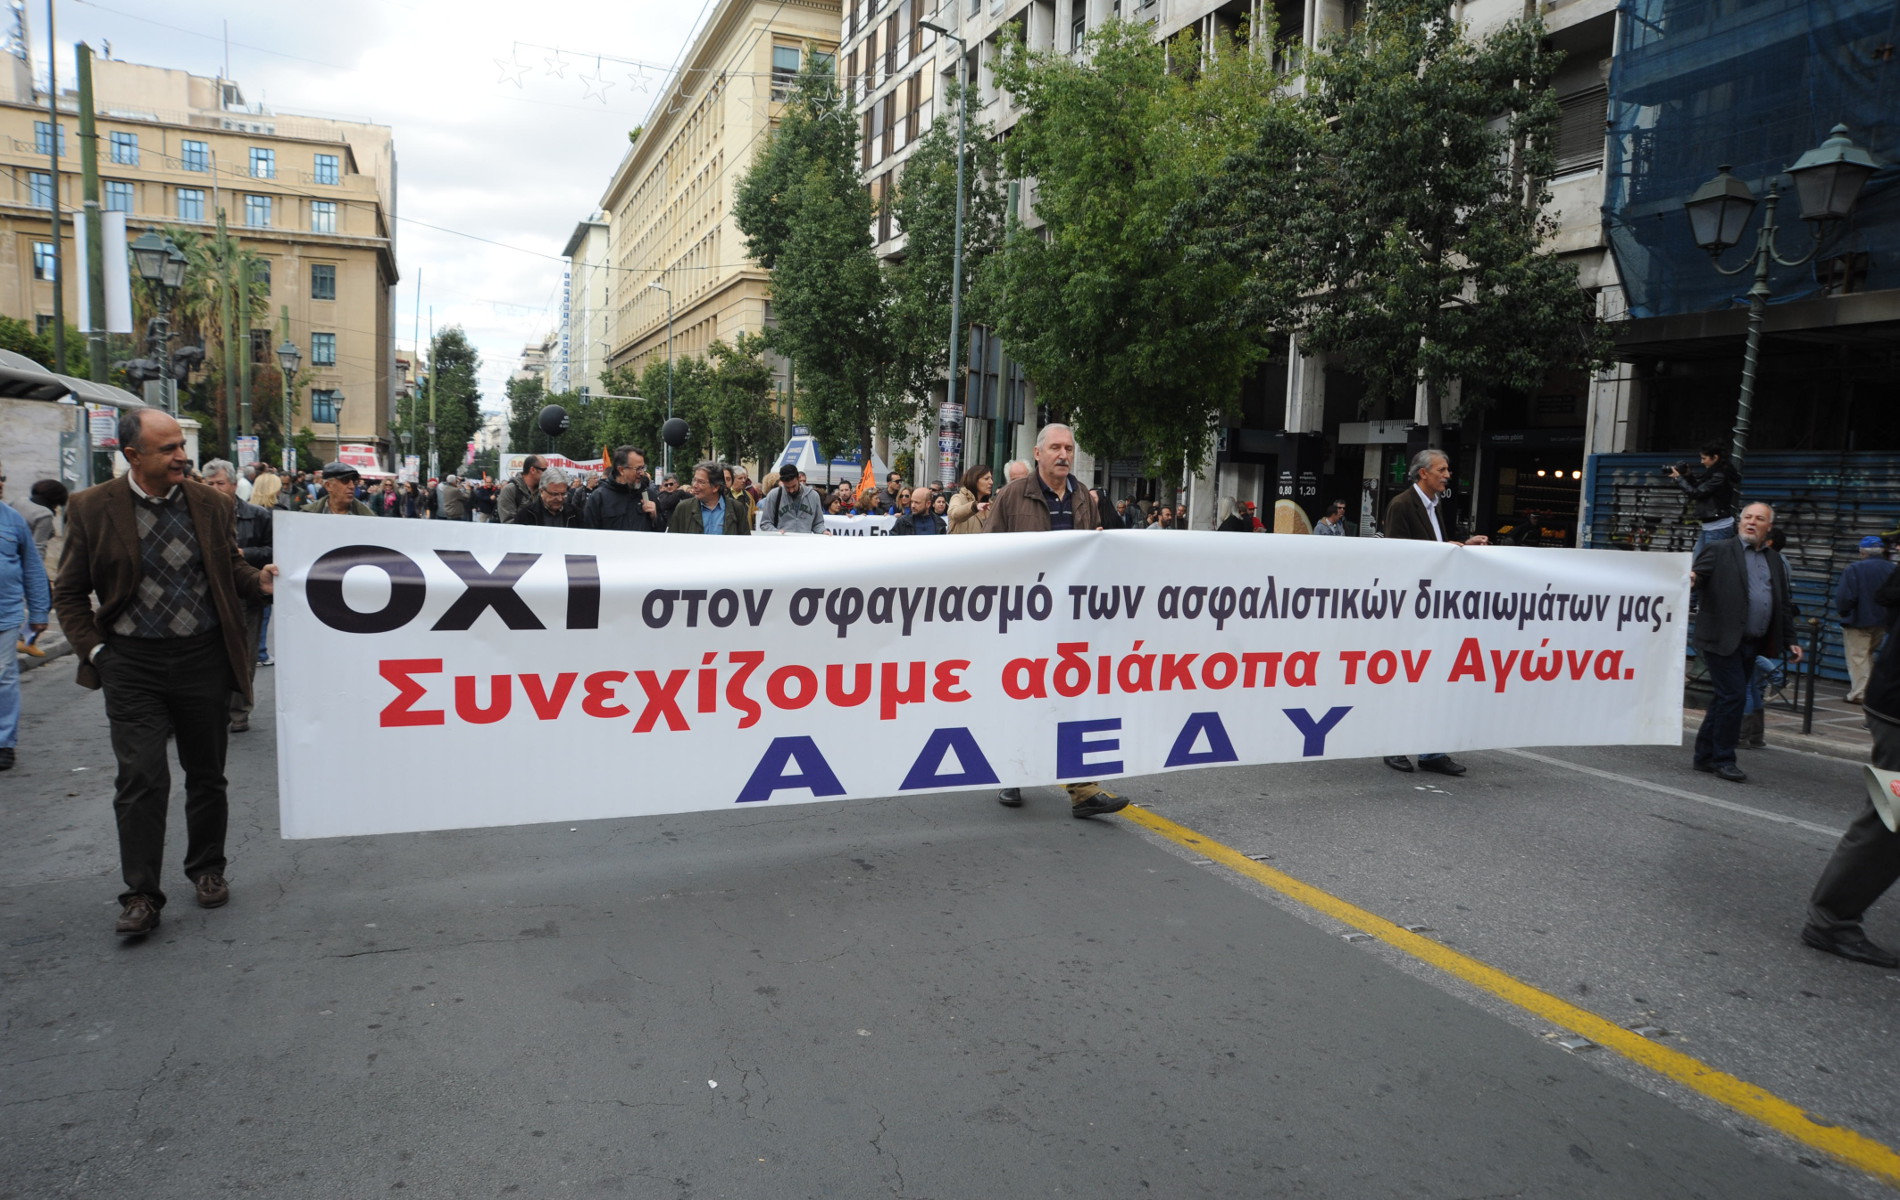 ΑΔΕΔΥ: Θα συμμετάσχει στην 24ωρη γενική απεργία της 30ής Μαΐου ενάντια σε λιτότητα και ανεργία